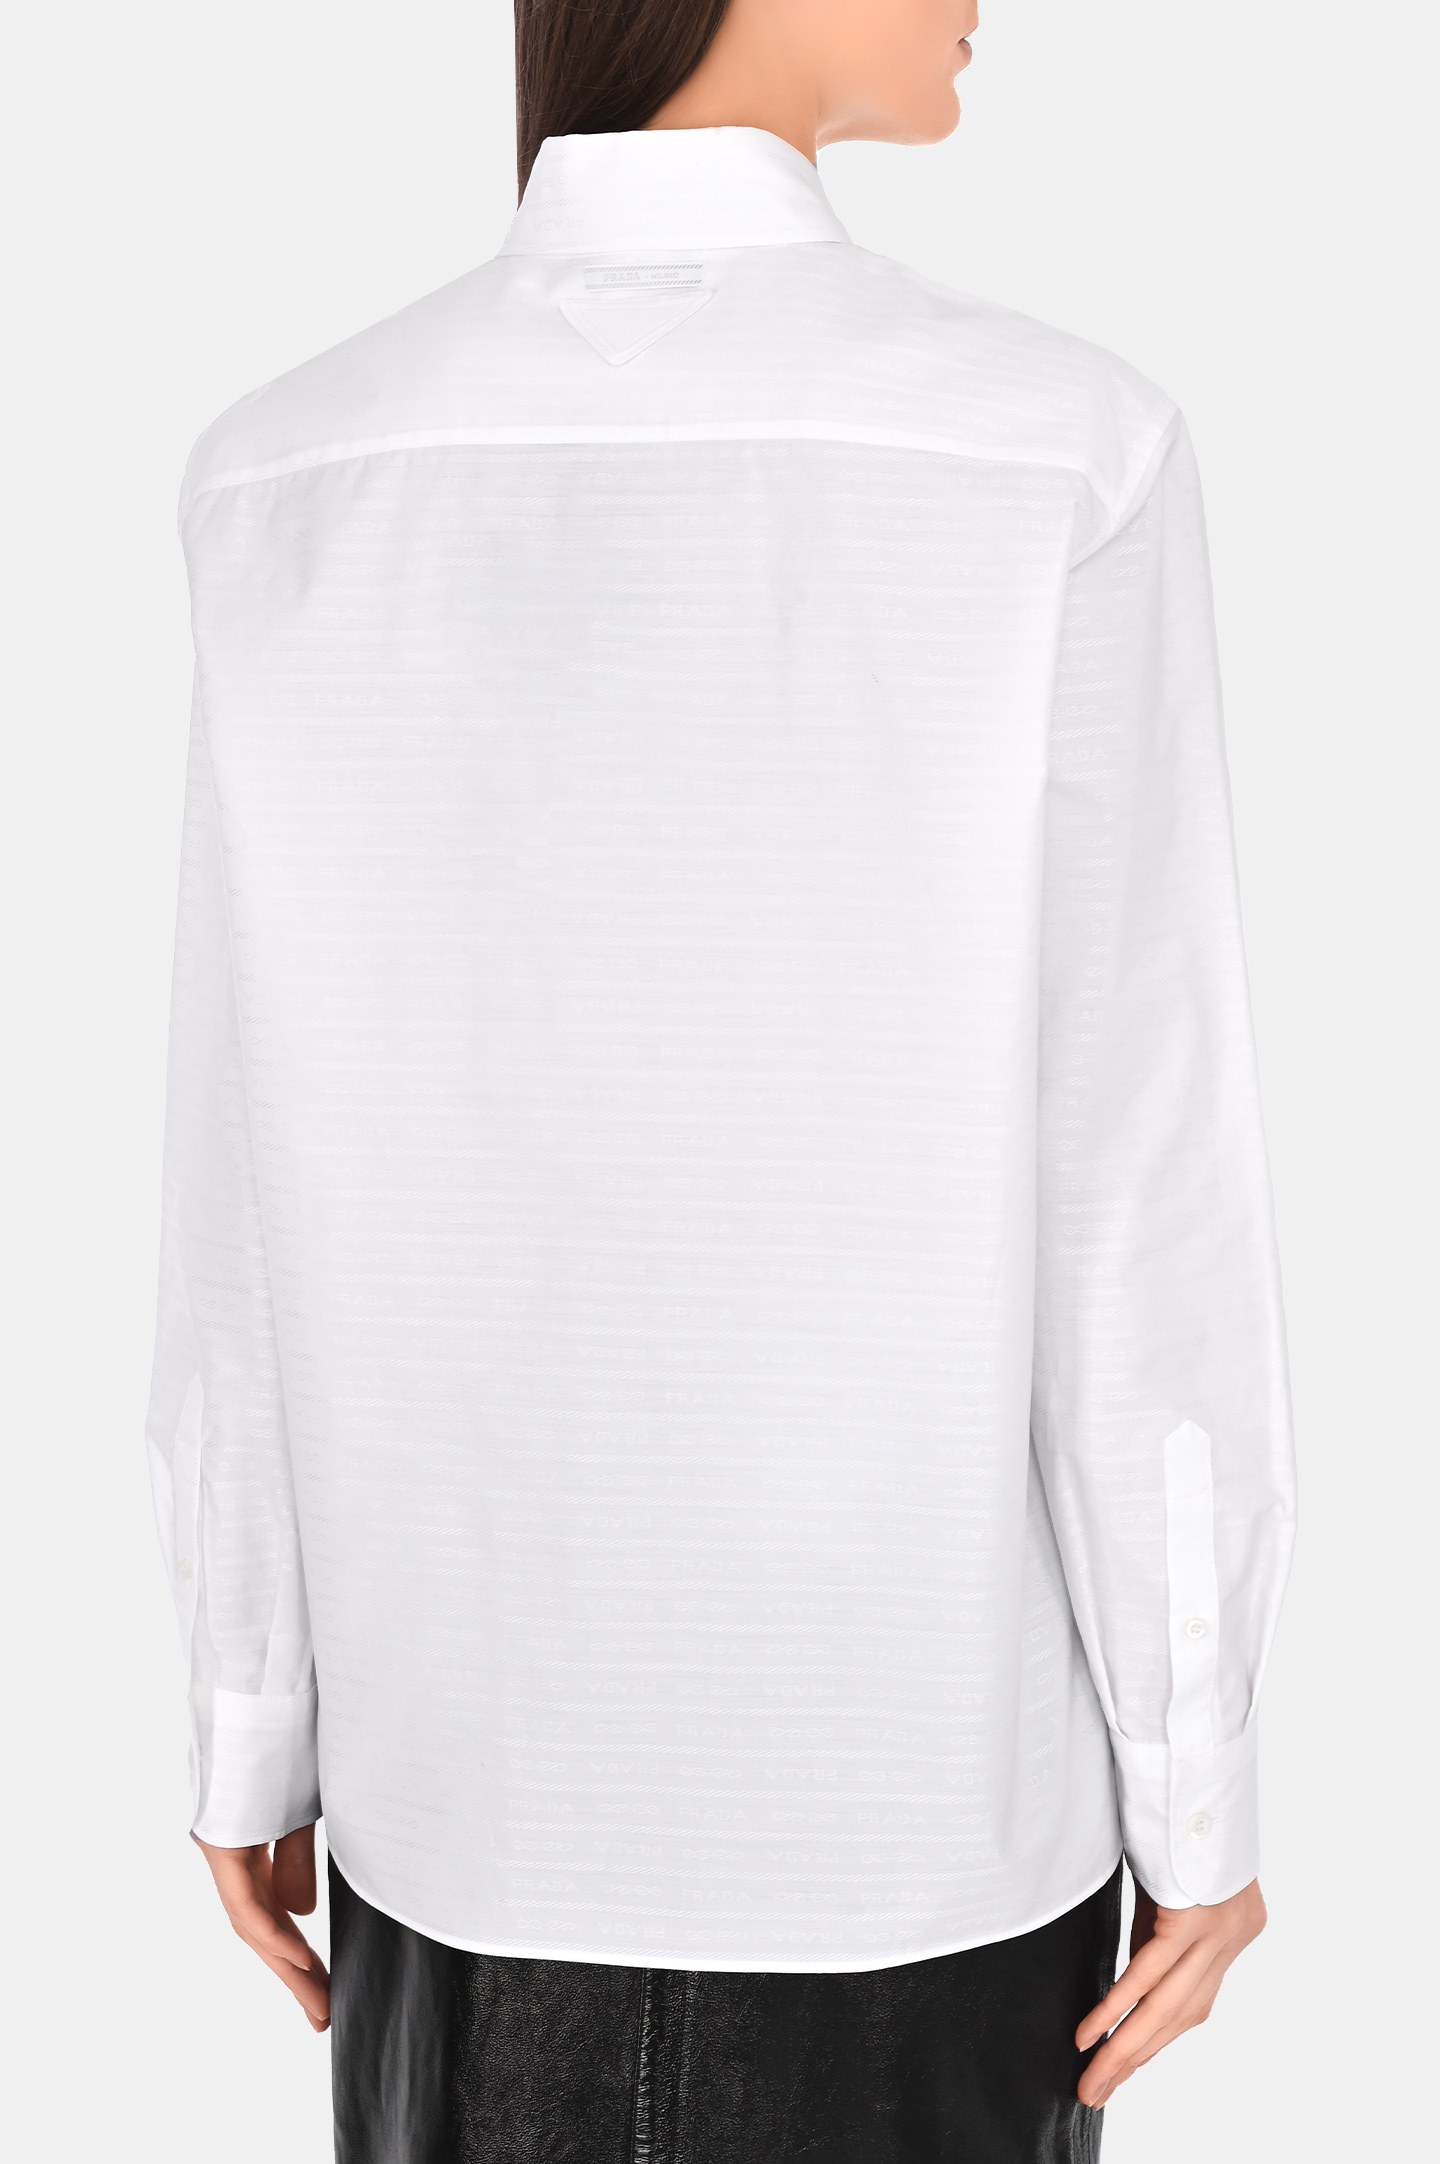 Блуза PRADA P443GXS2321VJP, цвет: Белый, Женский